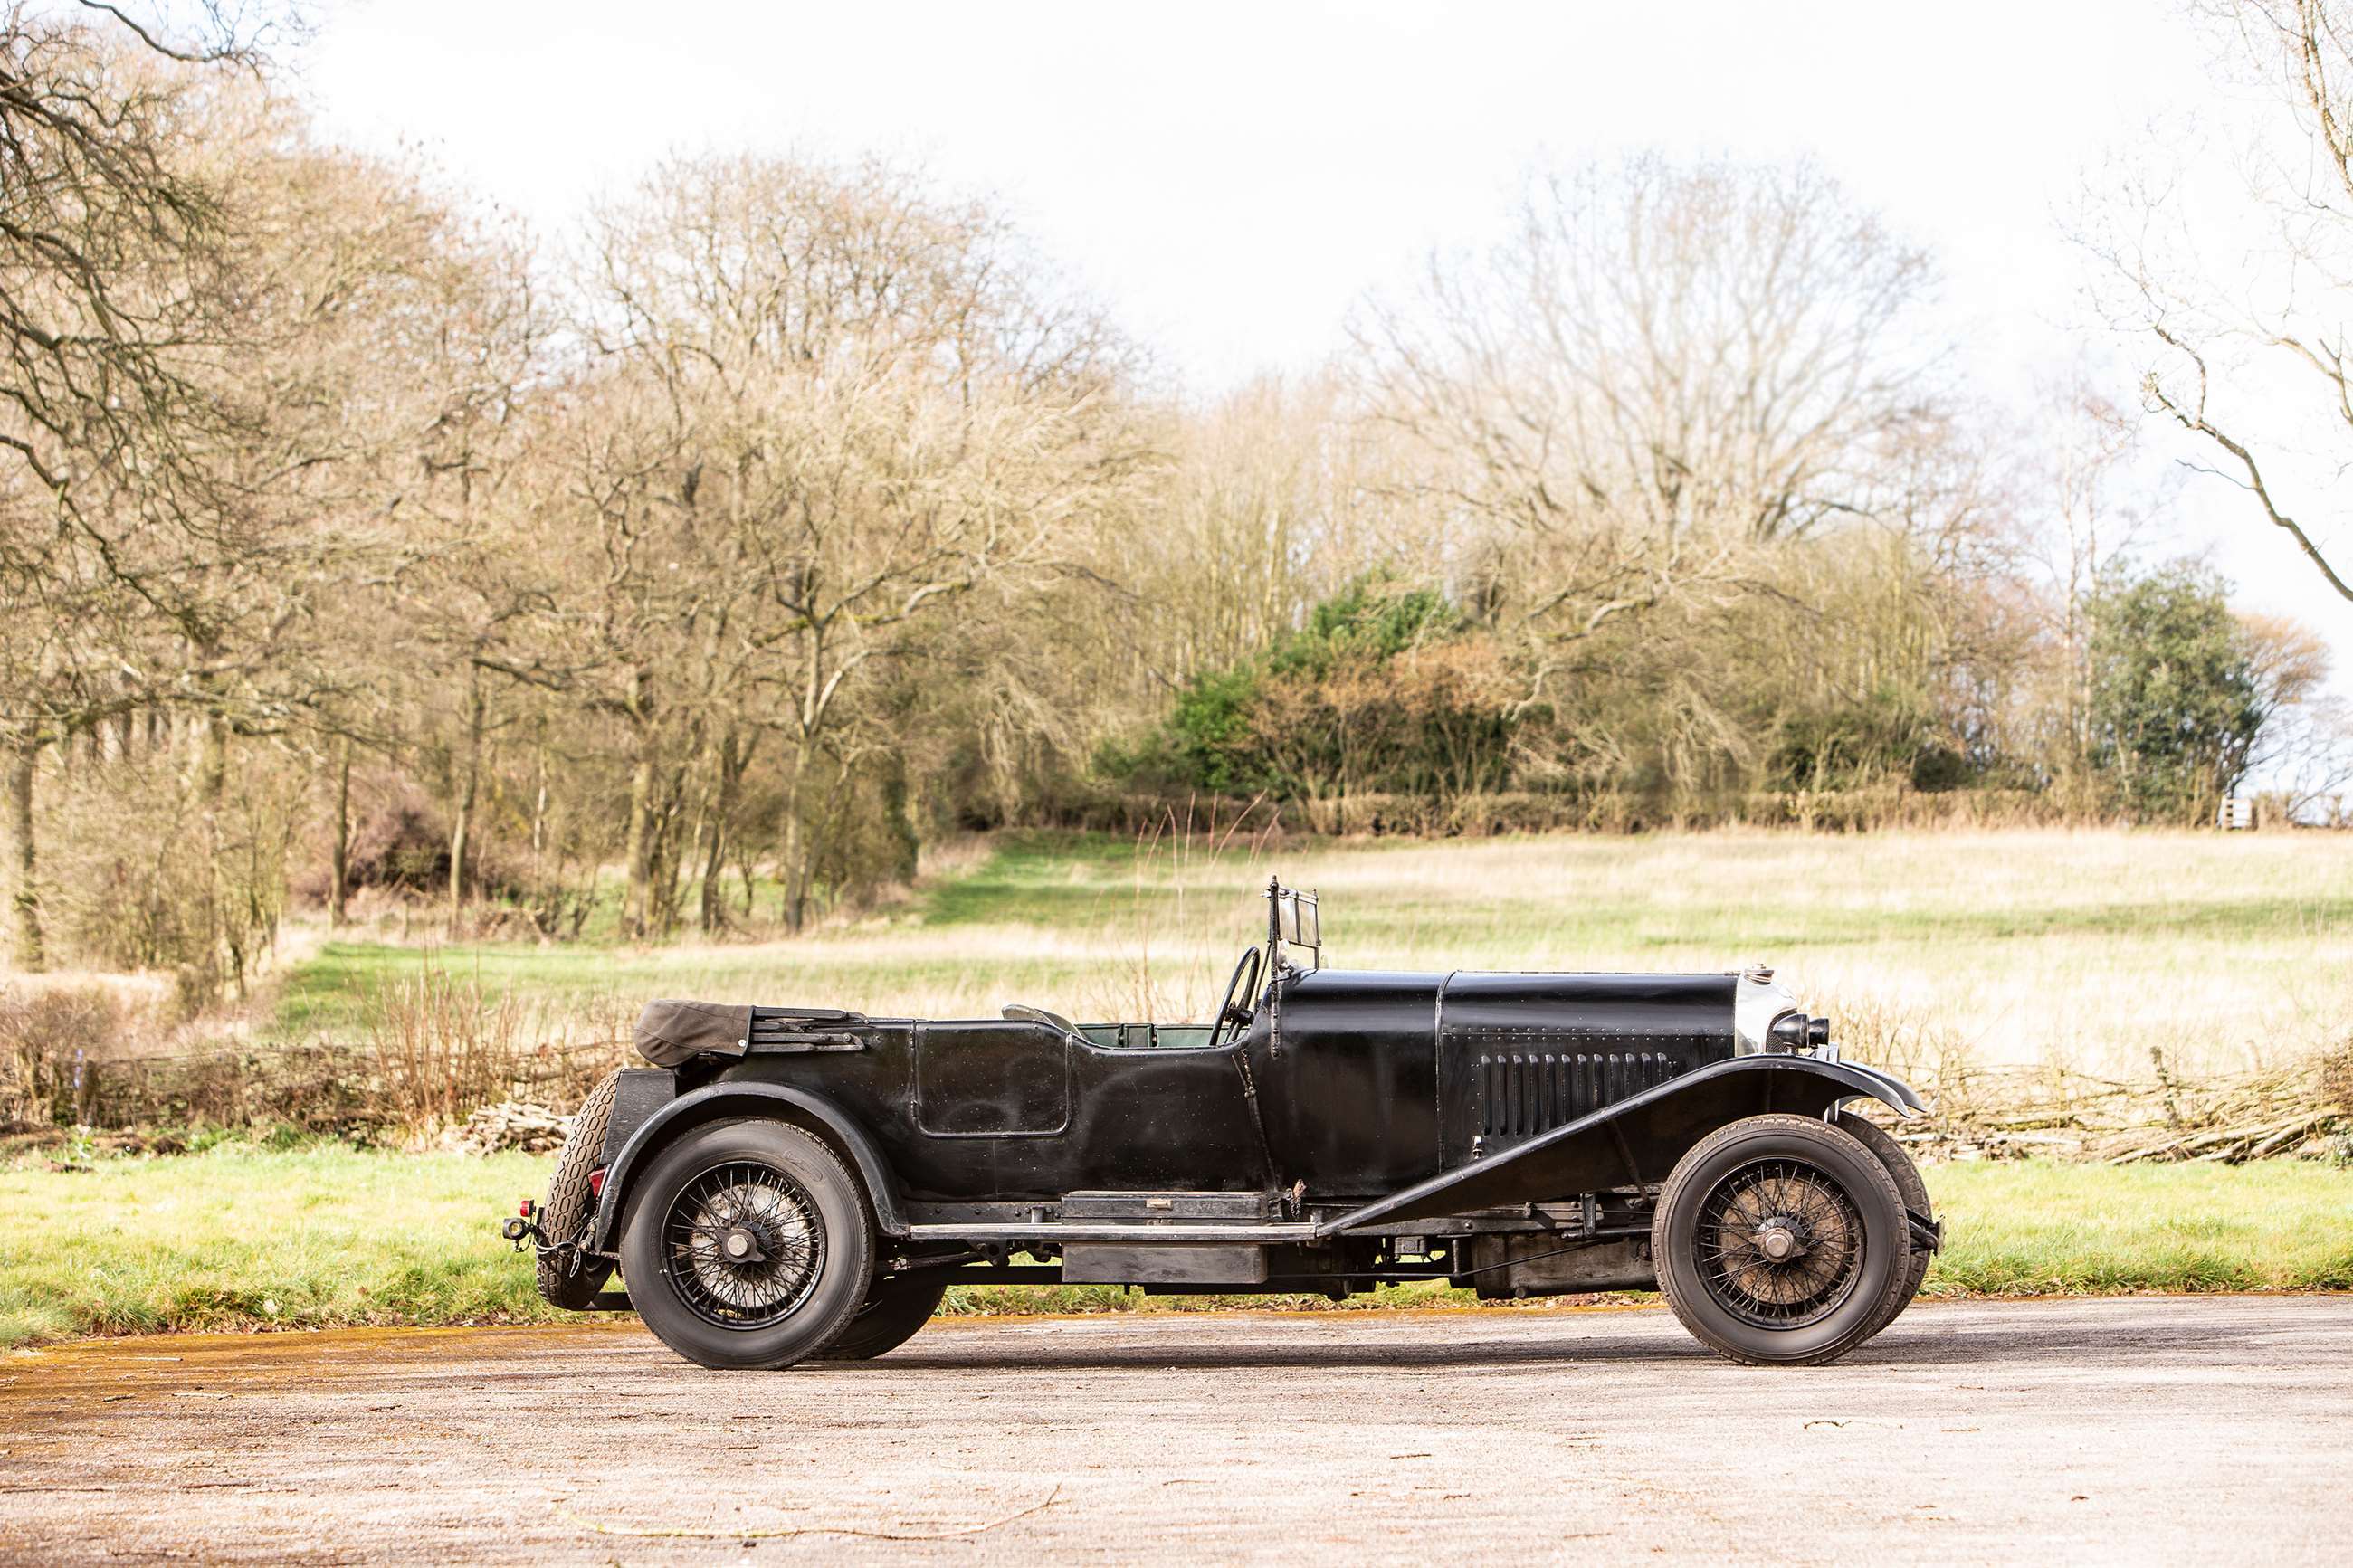 bentley-4-1_2-litre-tourer-1929-owner-bonhams-members-meeting-2019-goodwood-30032019.jpg